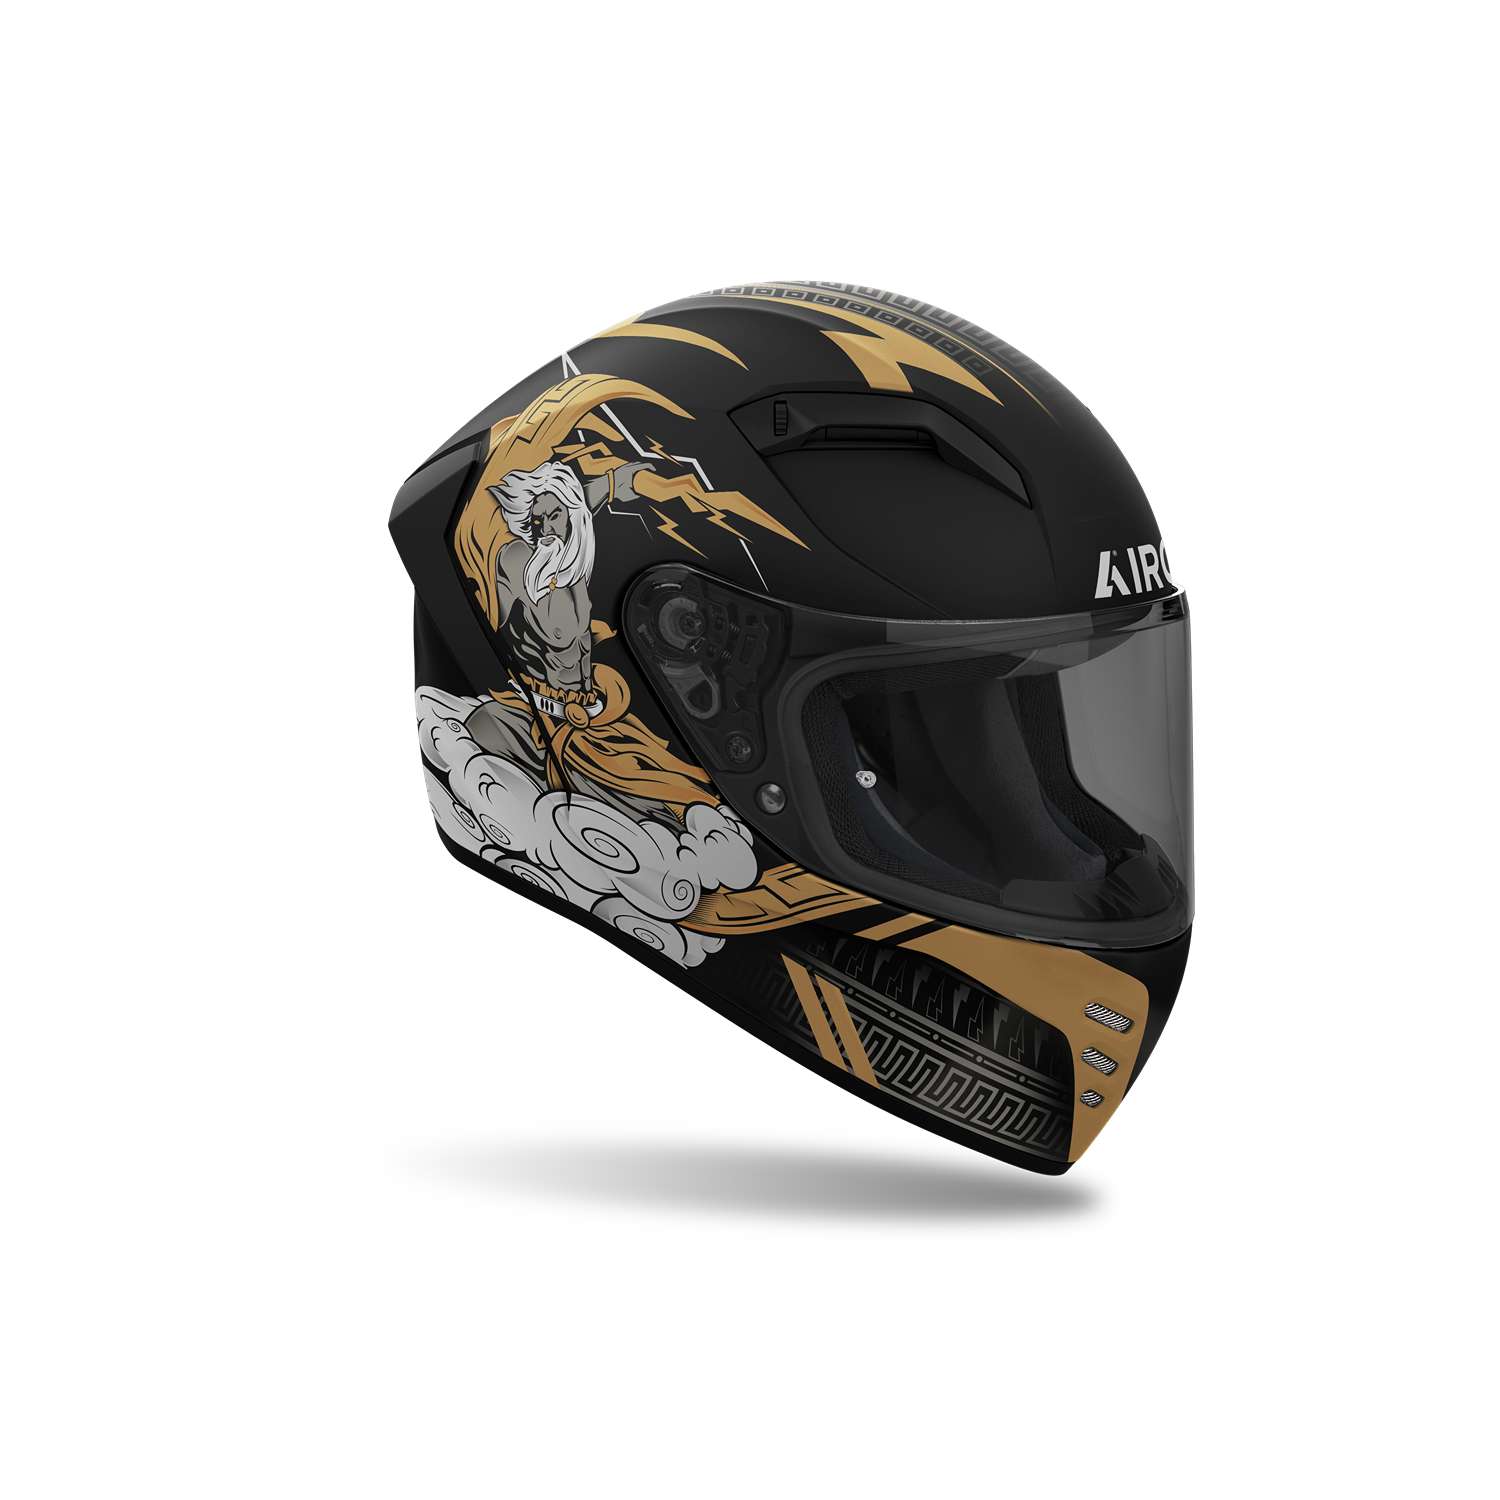 Image of Airoh Helmet Connor Zeus Full Face Helmet Size M ID 8029243354871